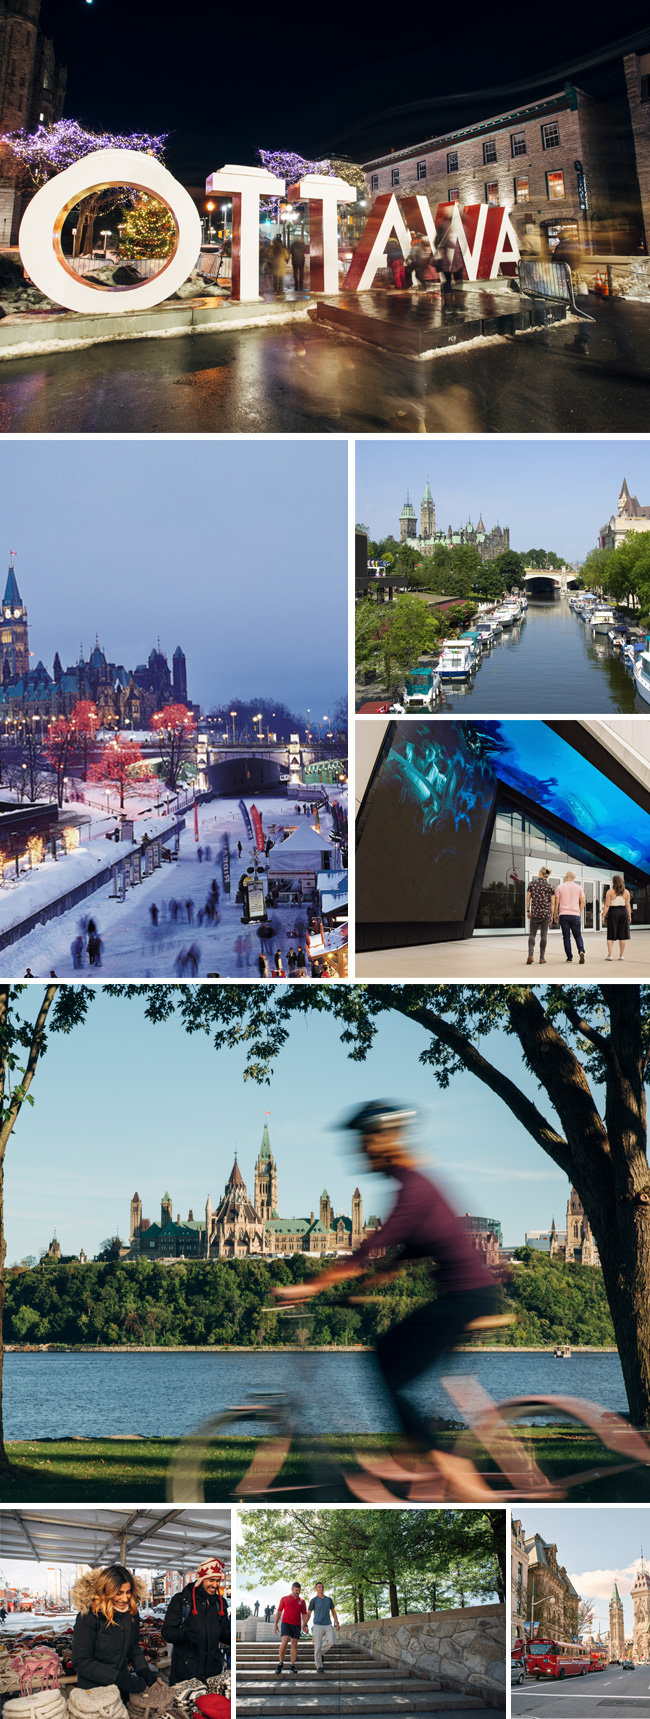 Montage de diverses scènes touristiques à Ottawa